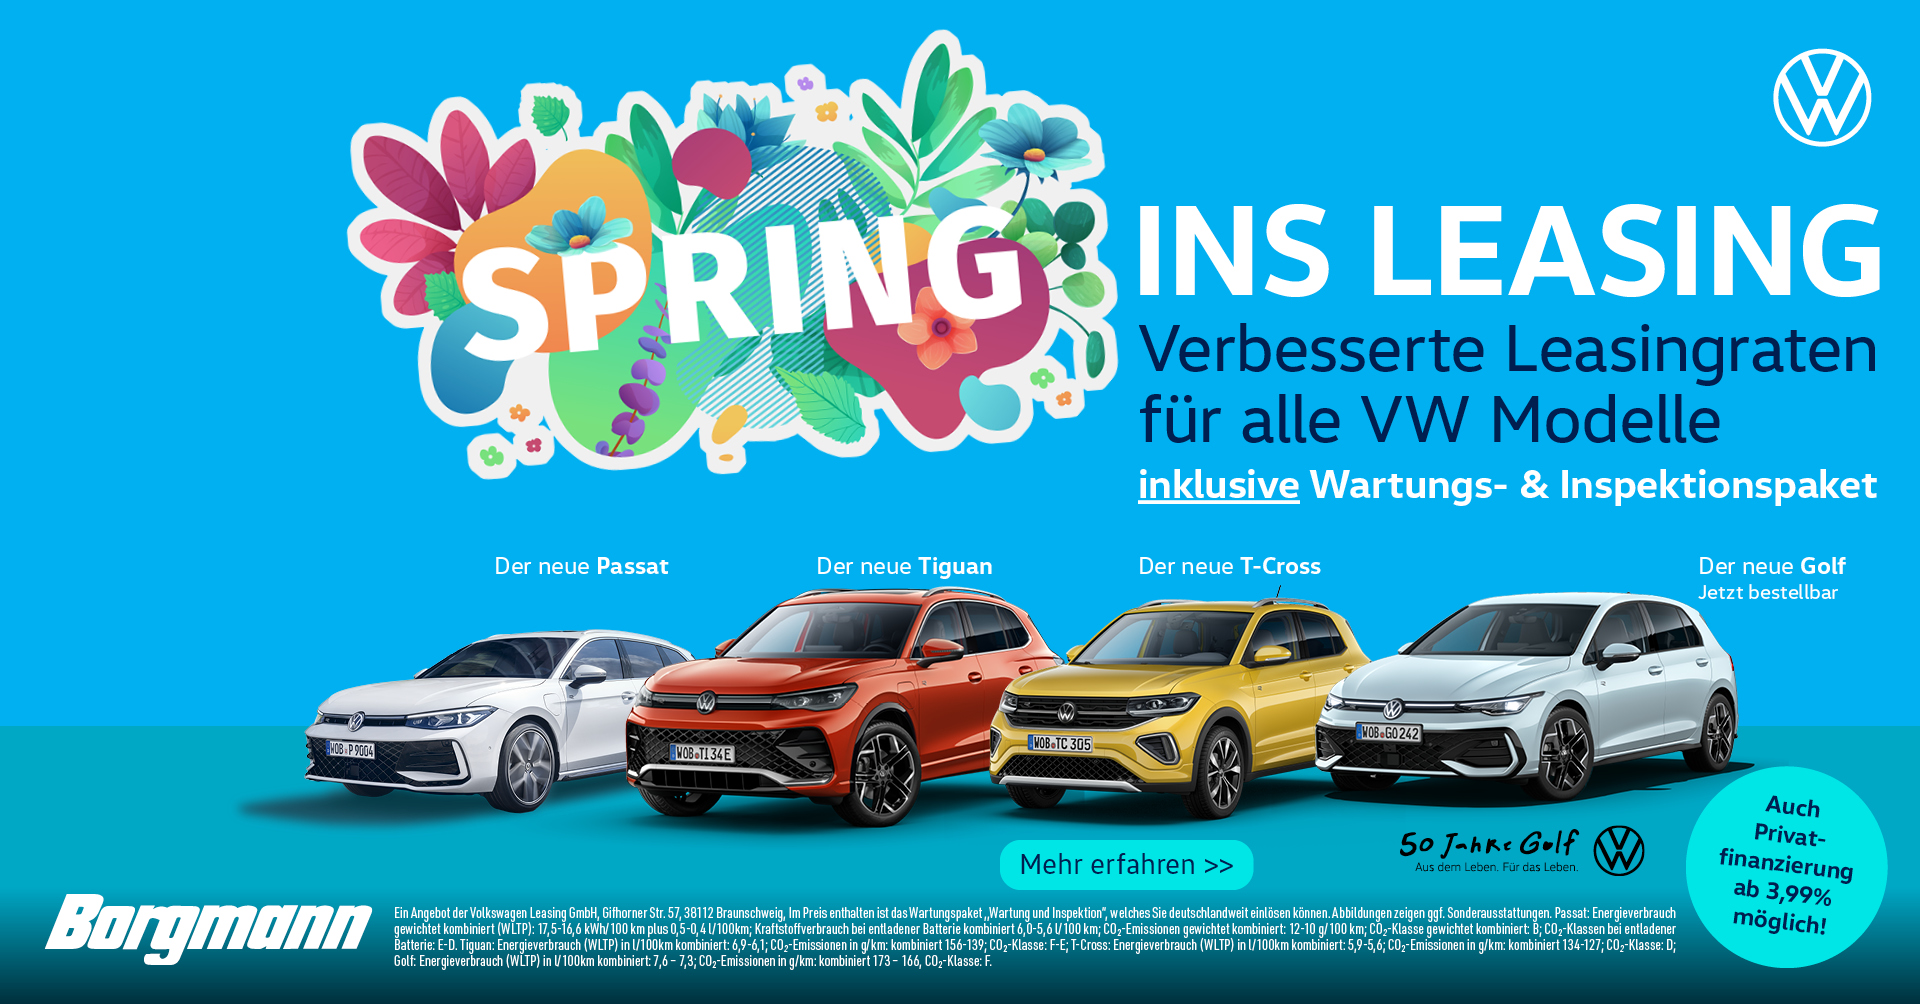 Verbesserte Leasingraten auf alle VW Modelle im Autohaus Borgmann!